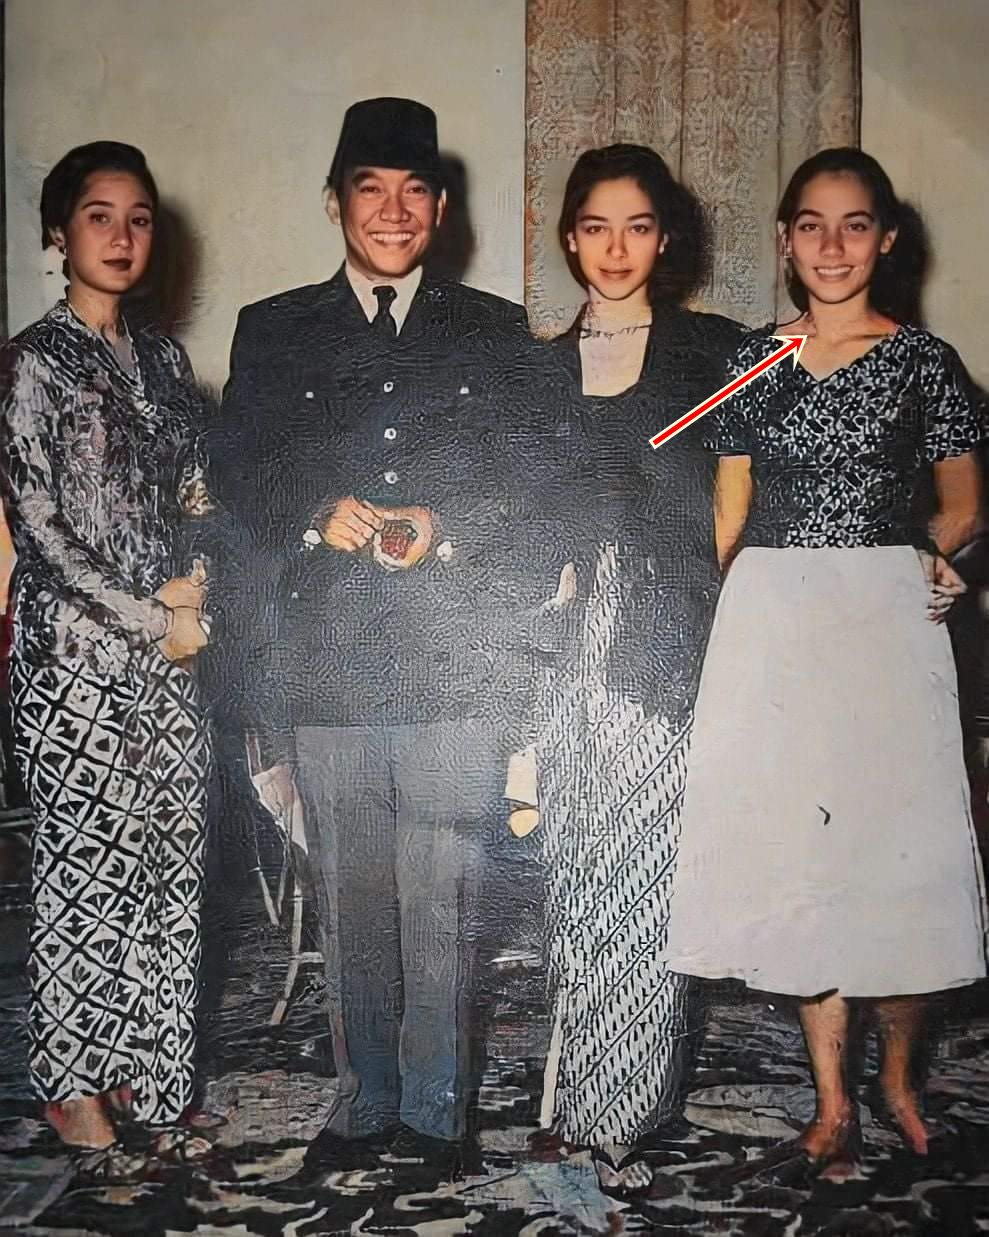 Gadis mirip Chelsea Islan foto bareng Presiden Soekarno ini tante aktor top, intip 11 transformasinya